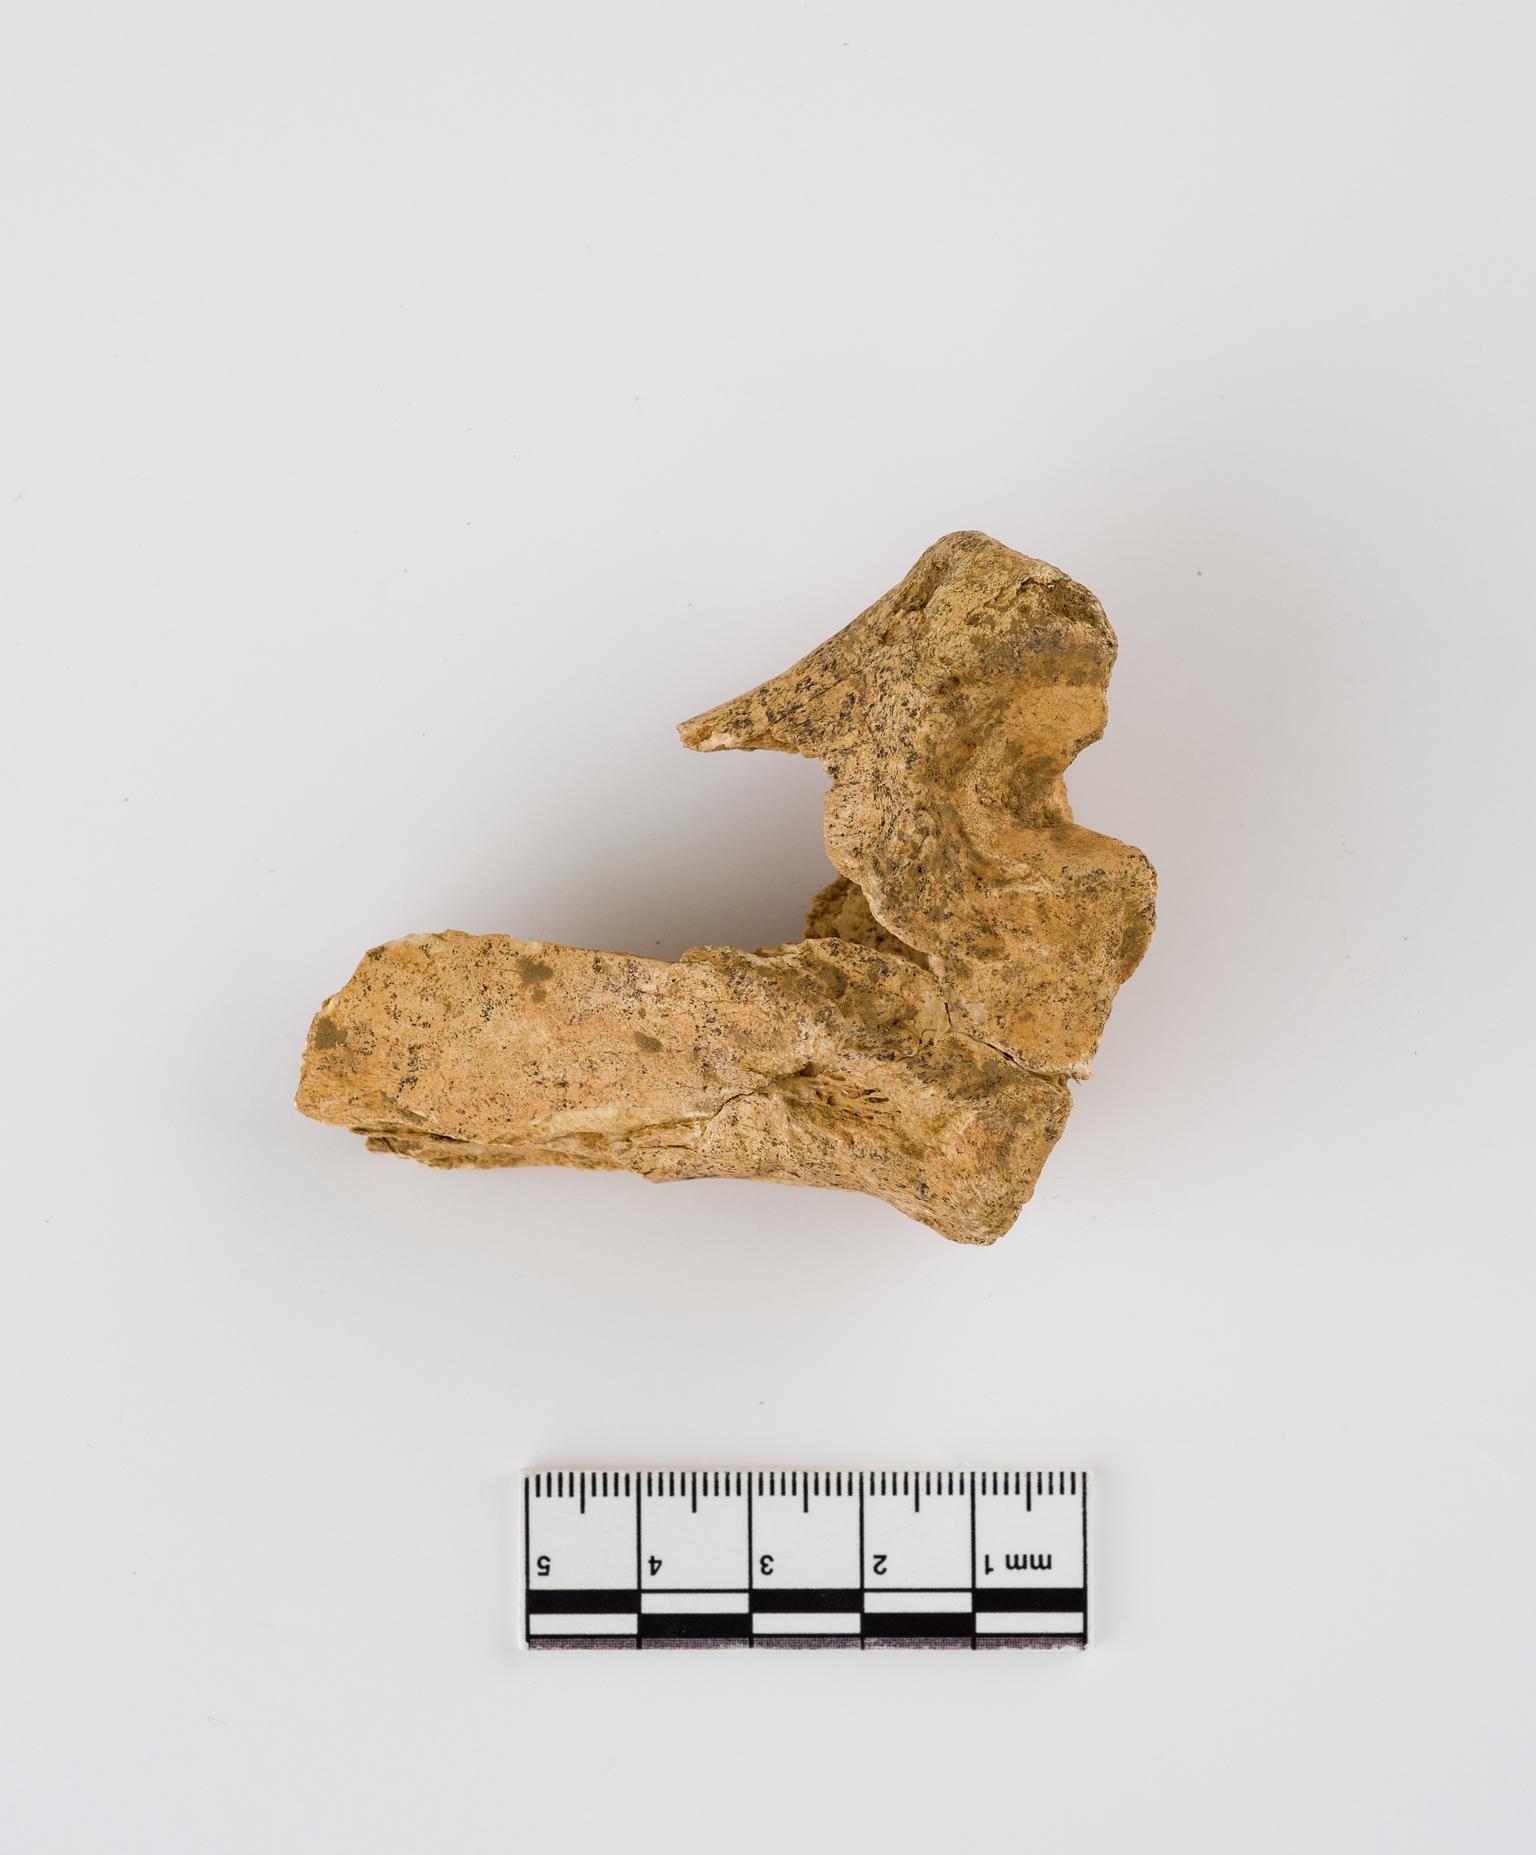 Pleistocene red deer bone